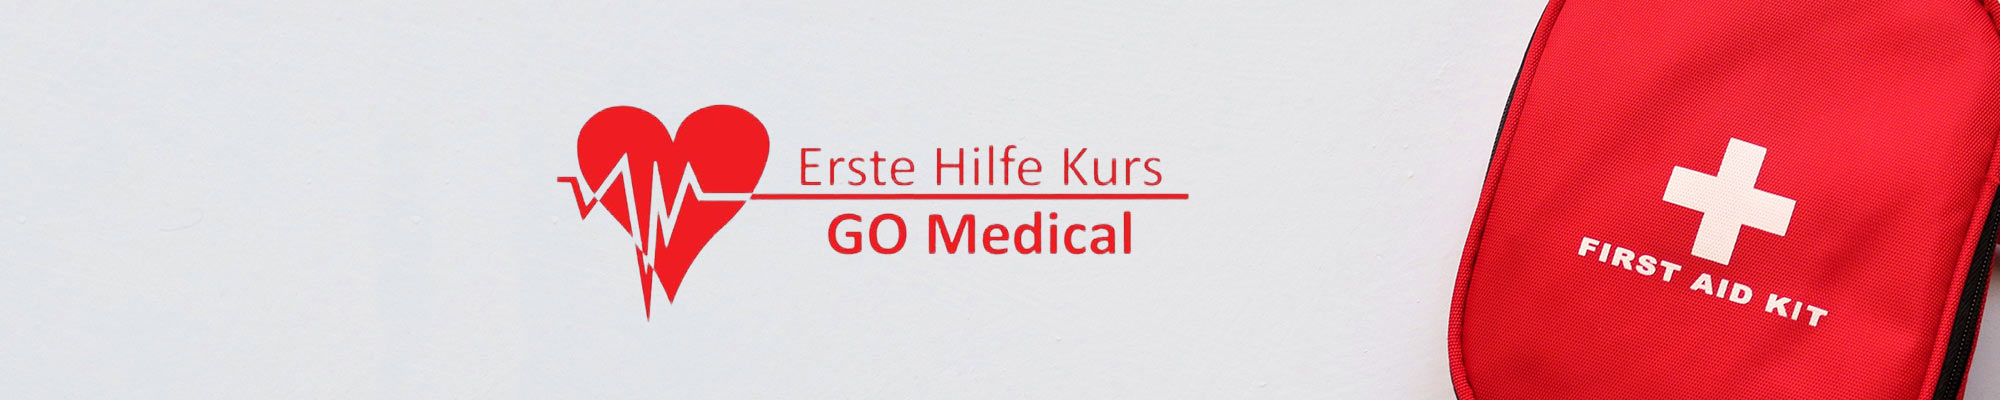 Erste Hilfe Kurs - Go Medical